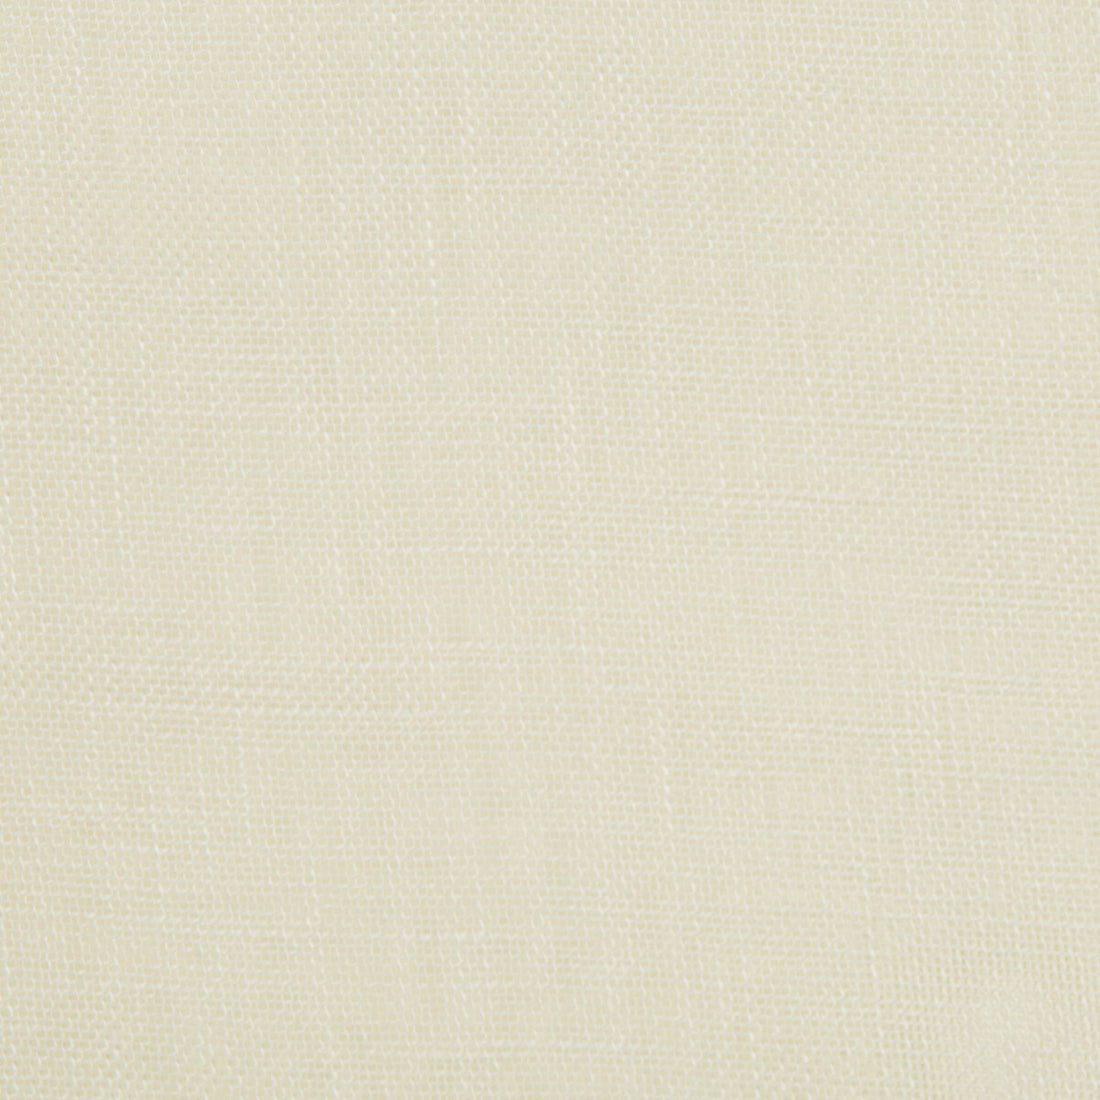 Kravet Basics fabric in 4427-1 color - pattern 4427.1.0 - by Kravet Basics